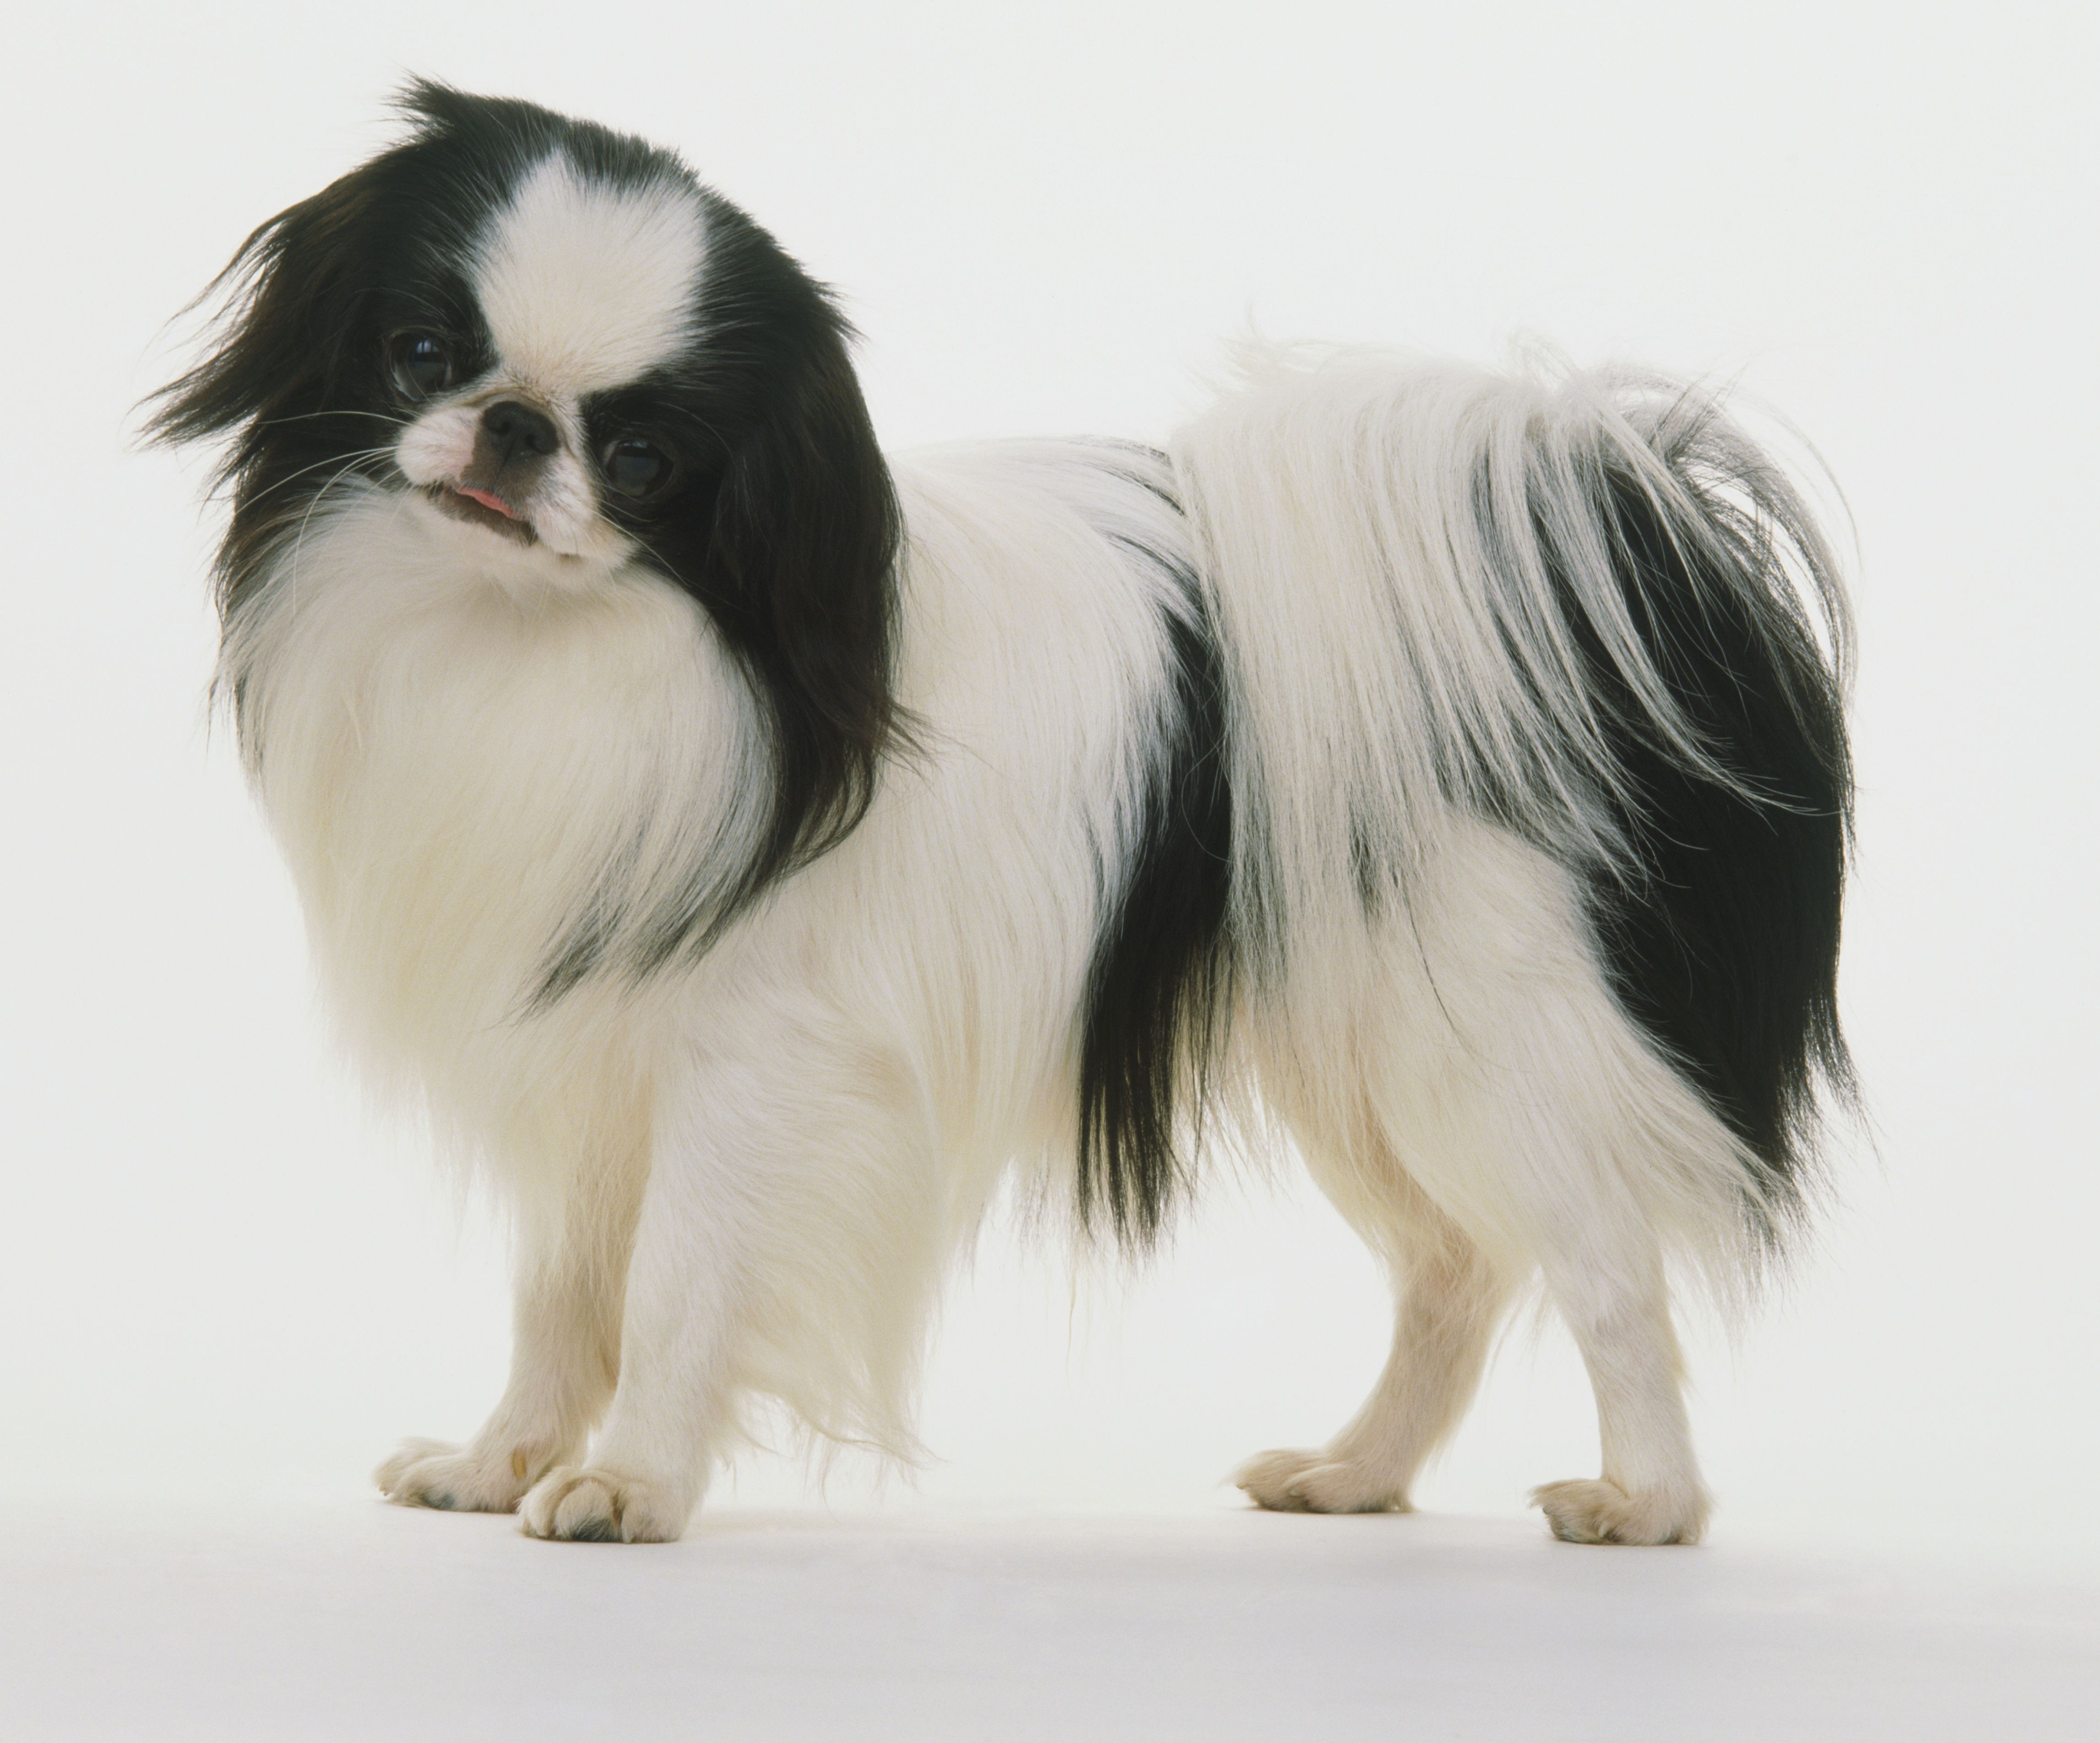 Chin giapponese (Spaniel giapponese):profilo della razza canina